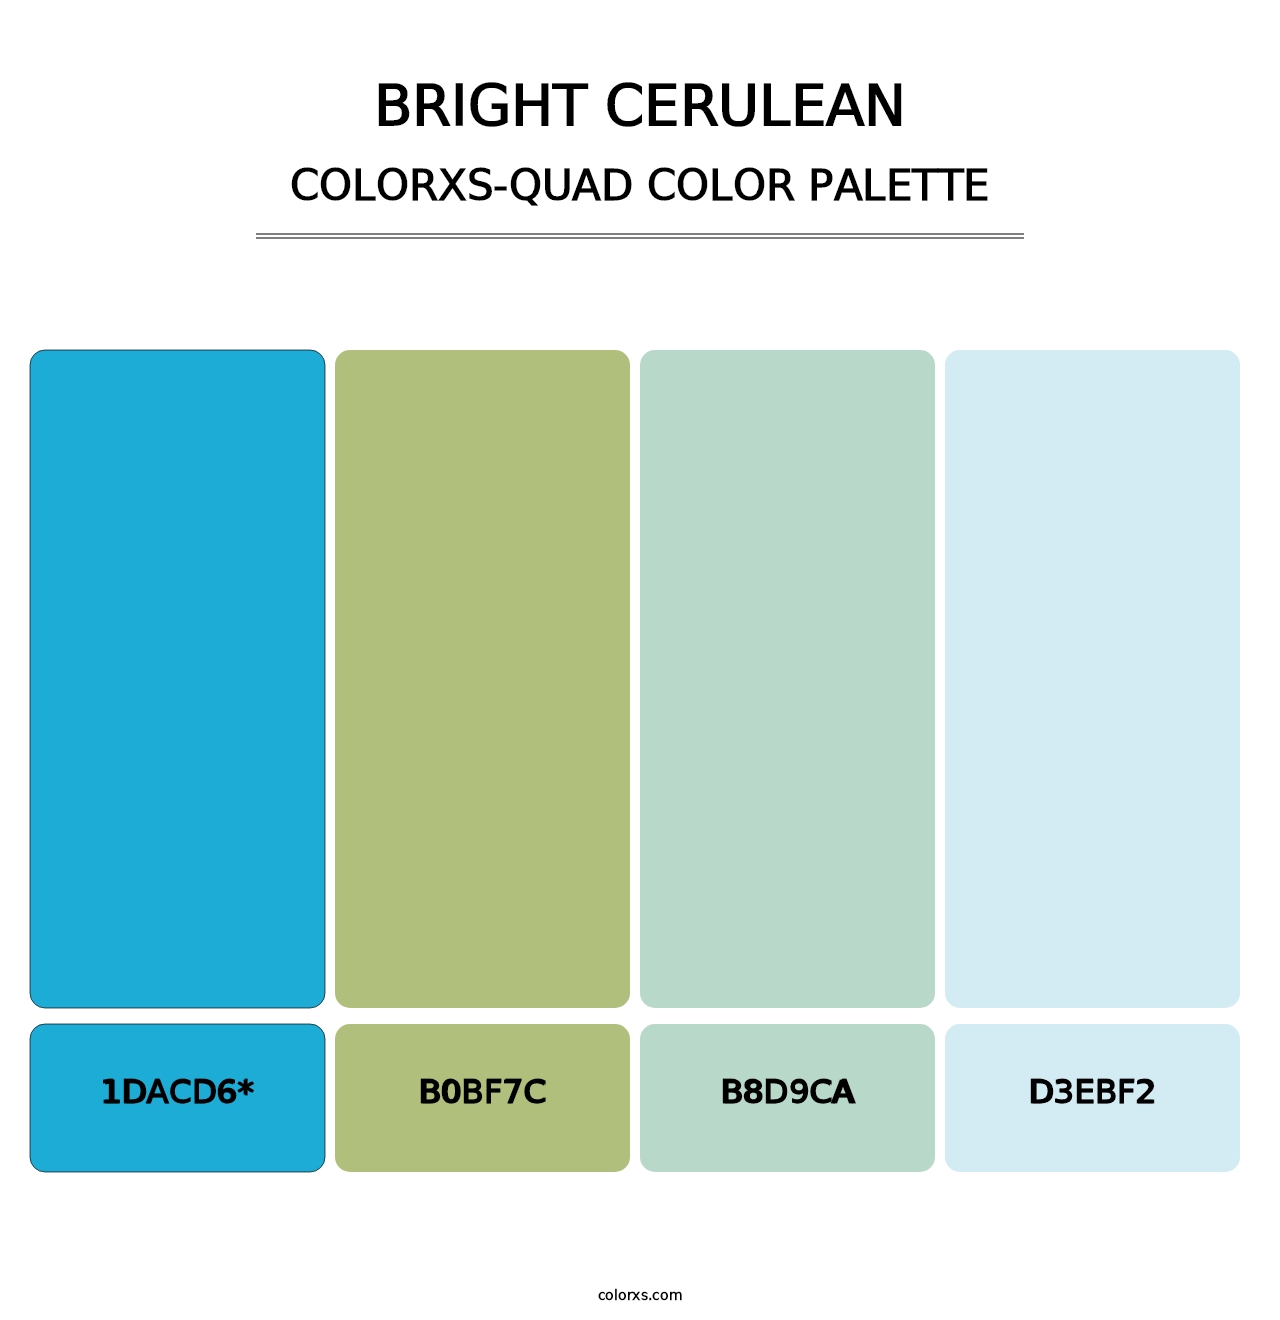 Bright Cerulean - Colorxs Quad Palette